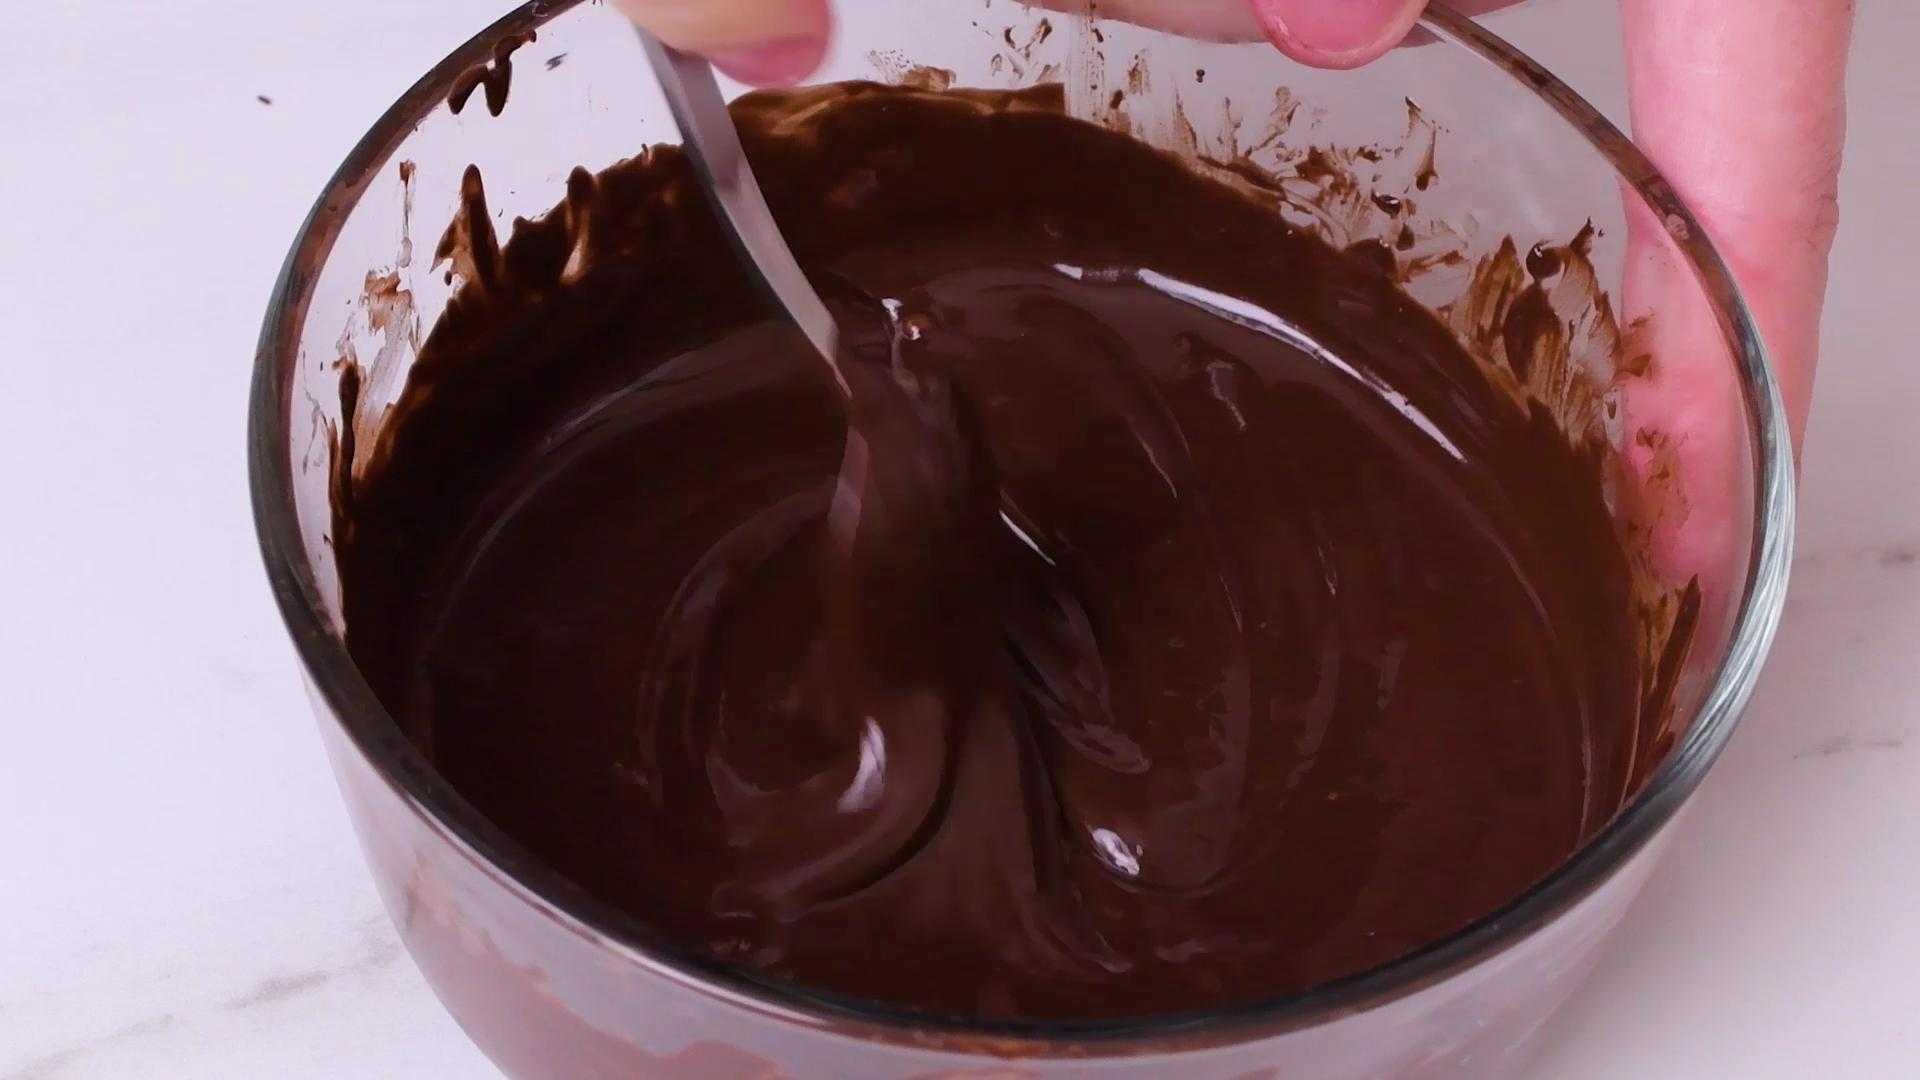 Repetir esto hasta que el chocolate esté totalmente derretido, tener cuidado de calentarlo de más porque puede llegar a quemarse.